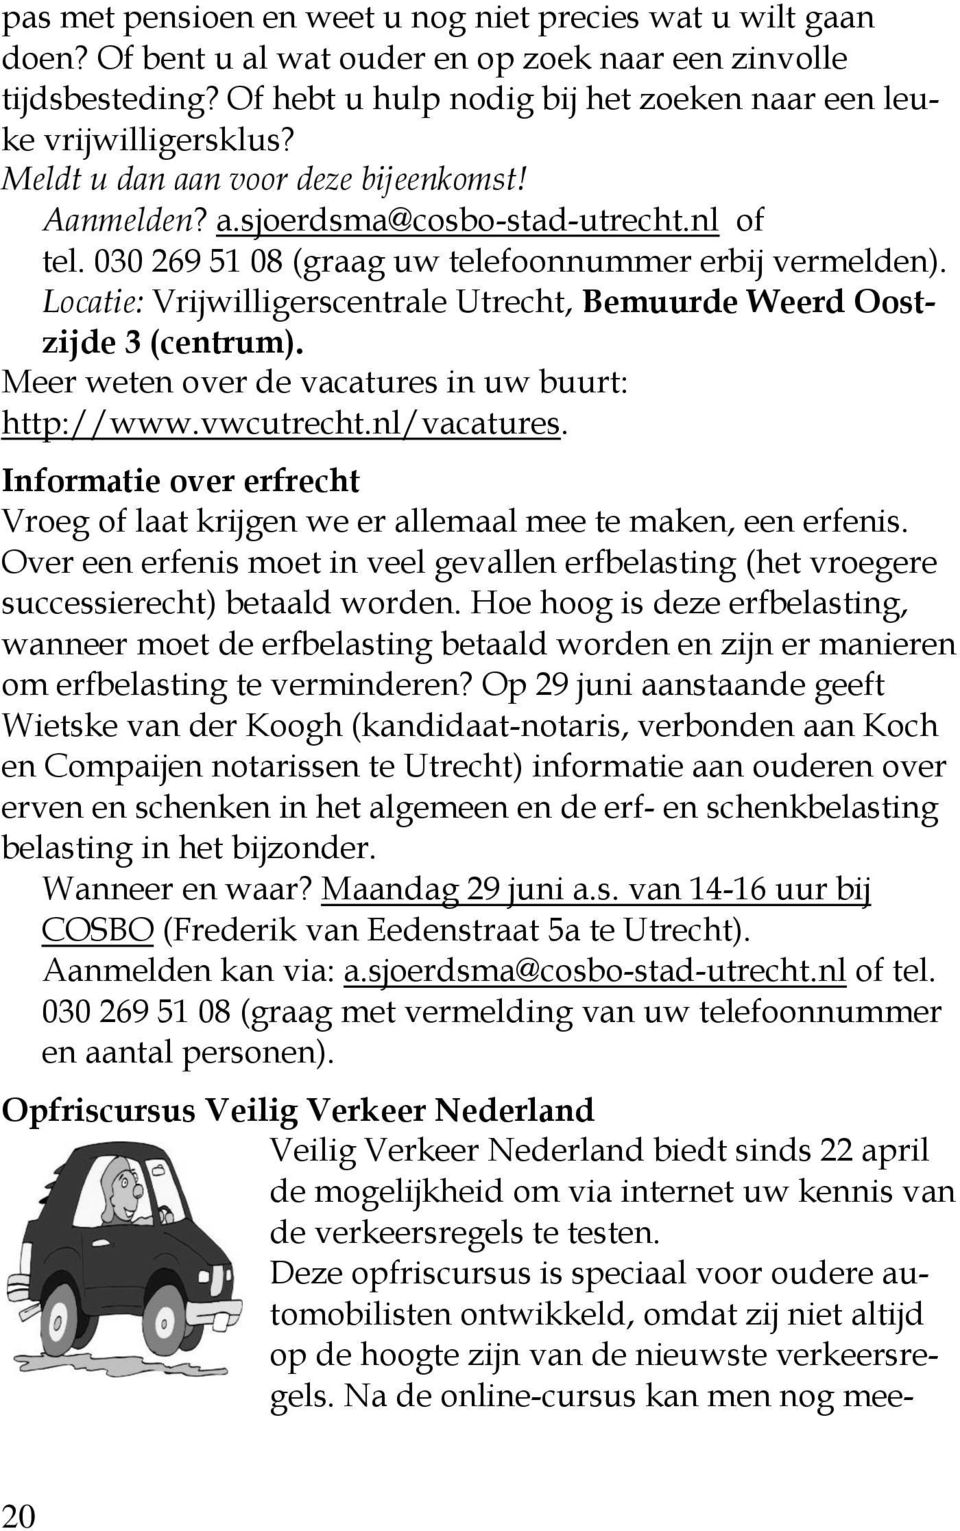 030 269 51 08 (graag uw telefoonnummer erbij vermelden). Locatie: Vrijwilligerscentrale Utrecht, Bemuurde Weerd Oostzijde 3 (centrum). Meer weten over de vacatures in uw buurt: http://www.vwcutrecht.